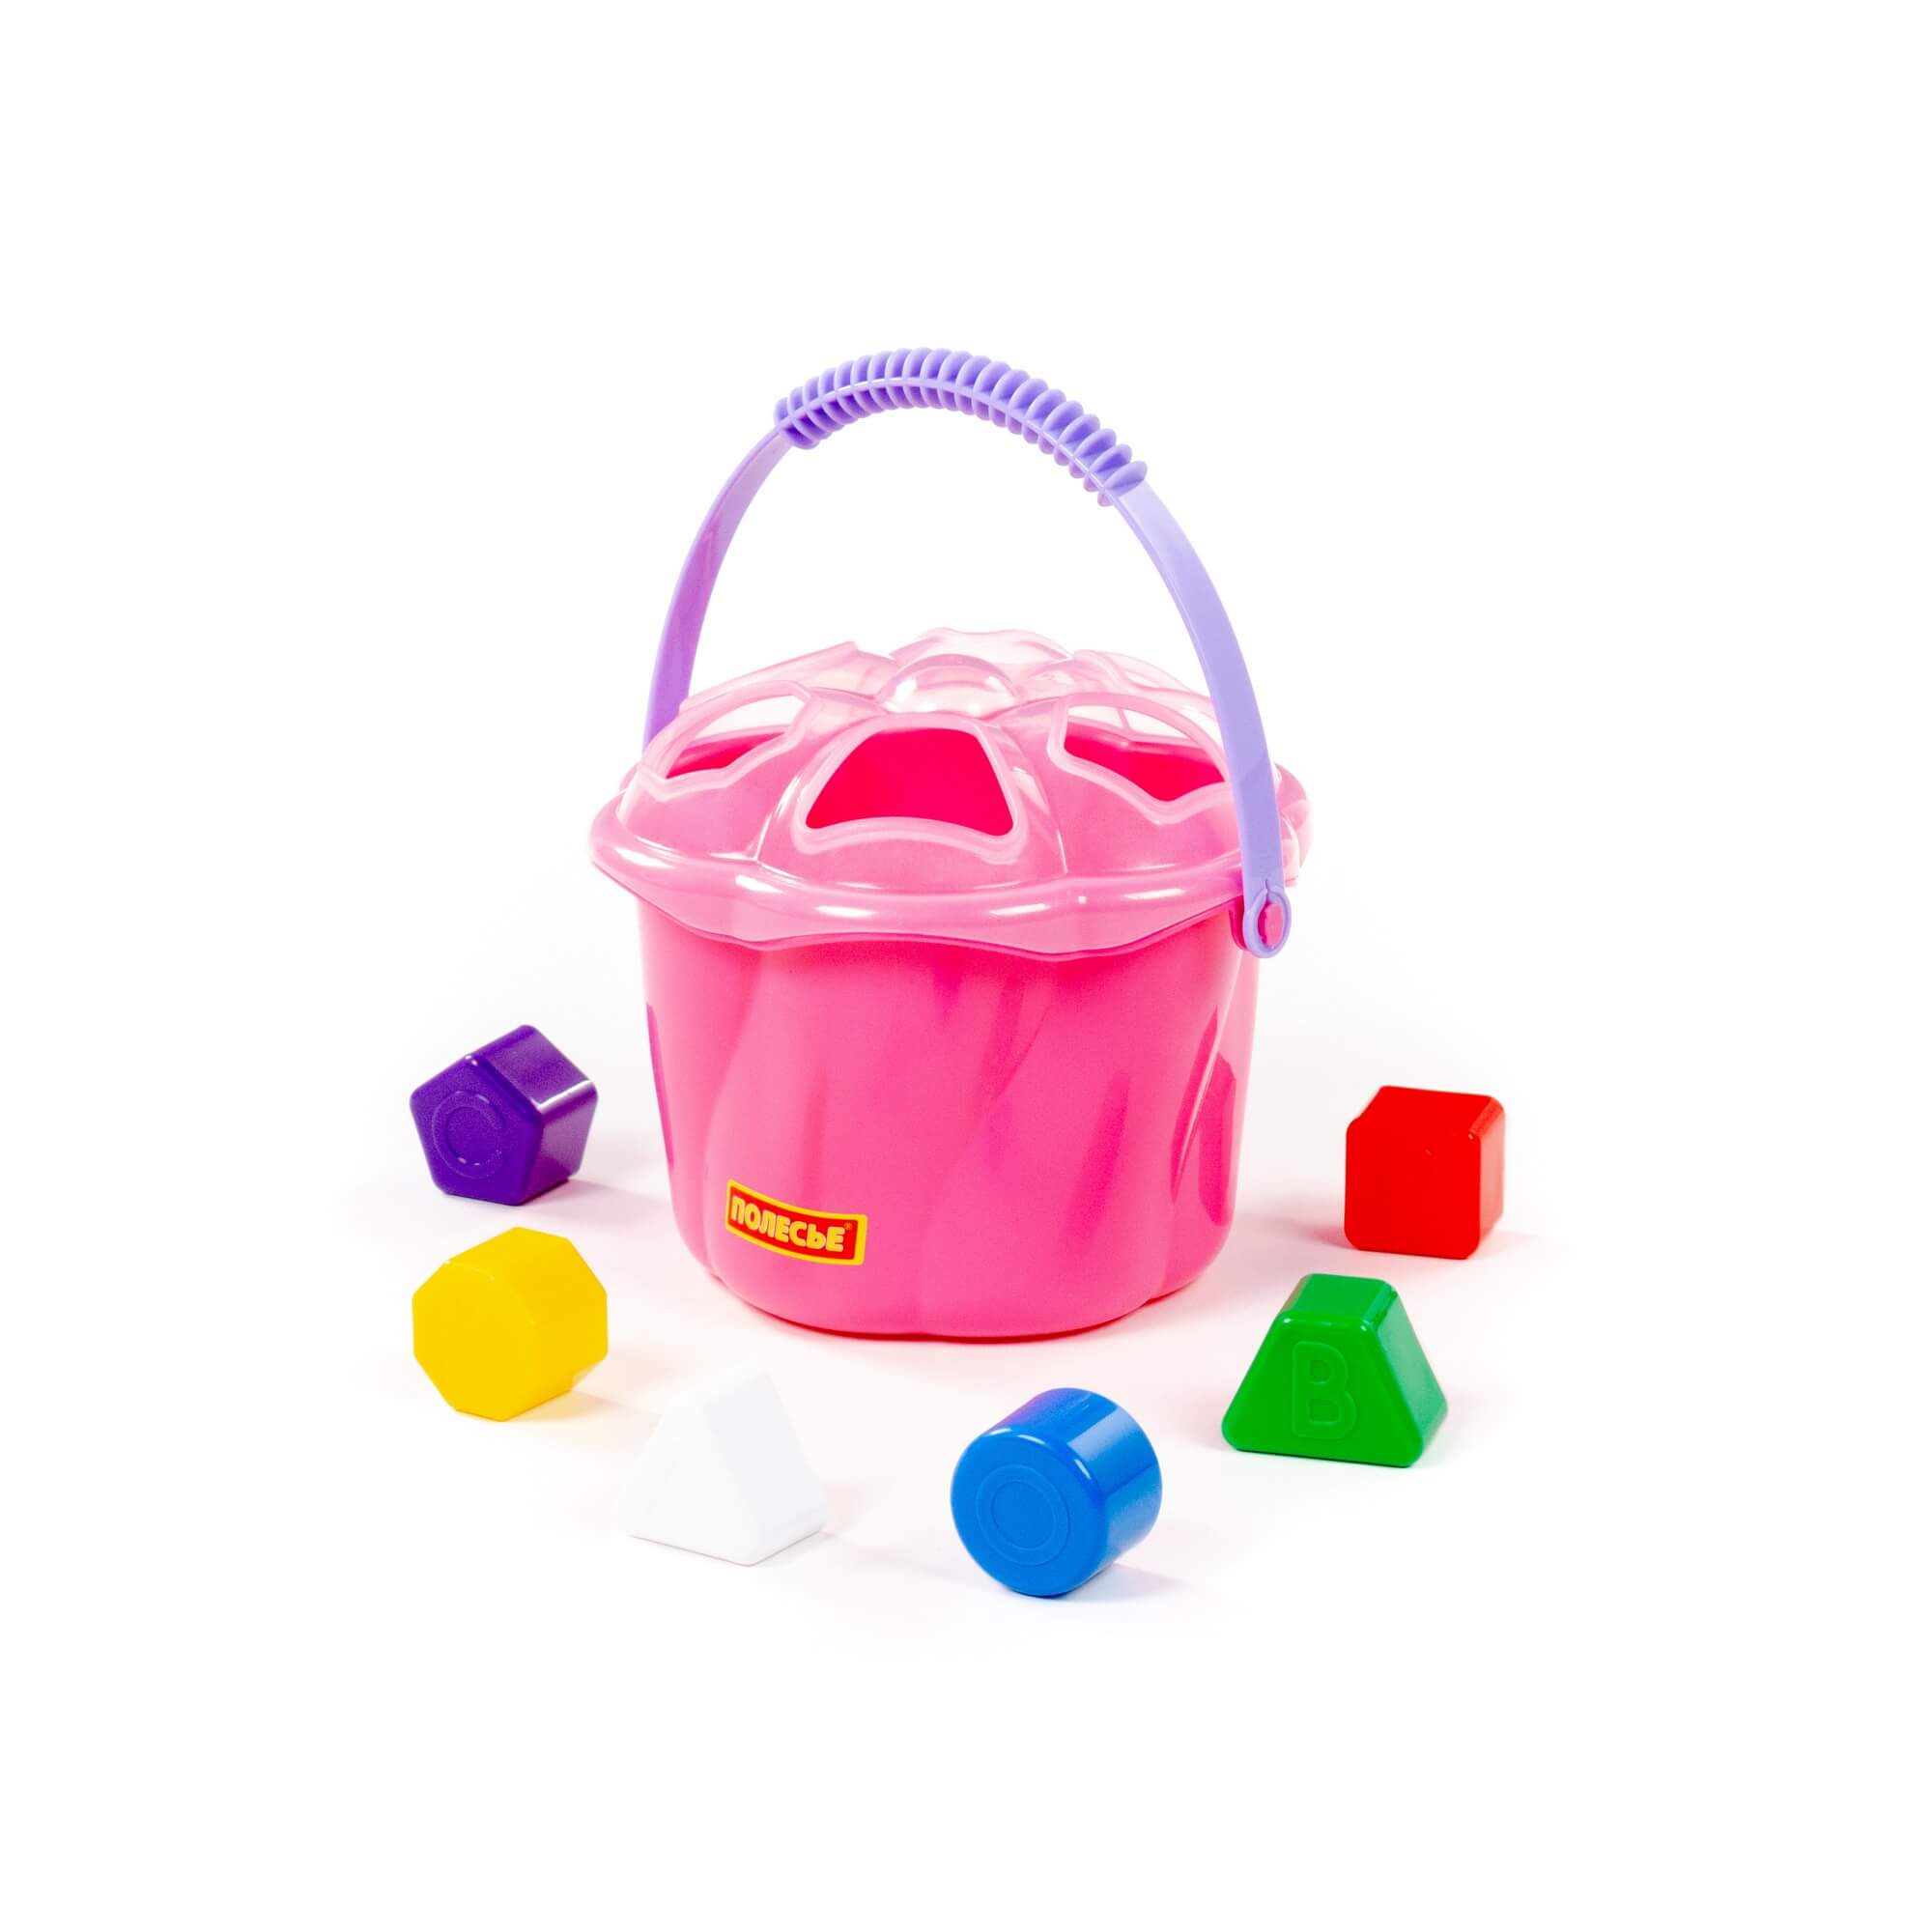 Развивающая игрушка 93479 Ведро сюрприз 6 эелементов розовый Полесье - Магнитогорск 